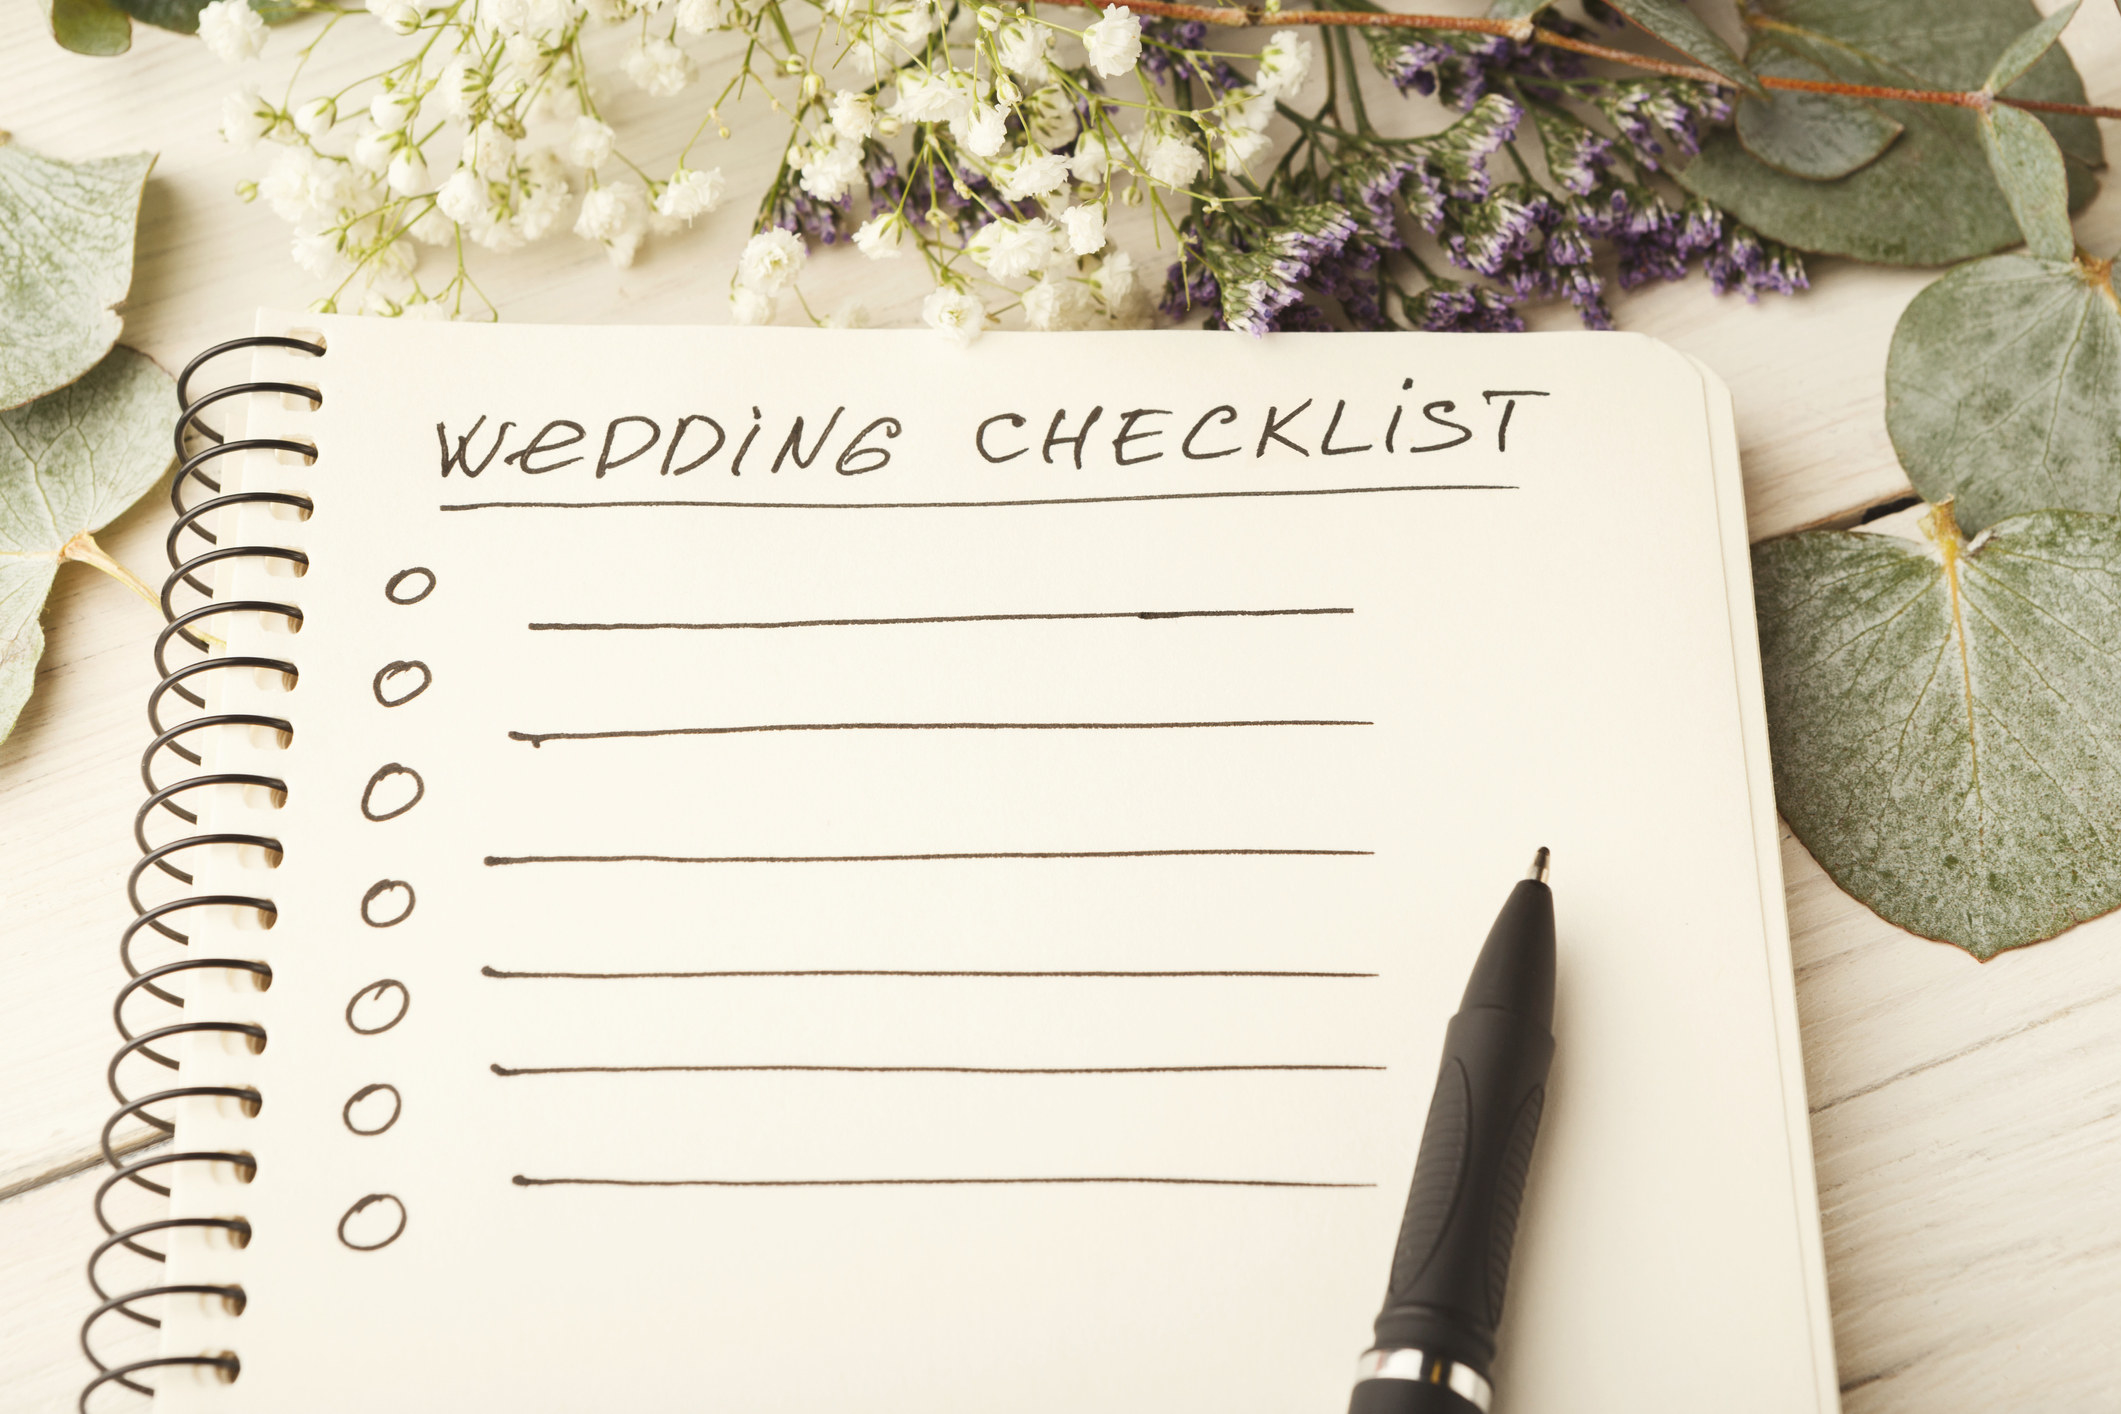 &quot;Wedding checklist&quot;